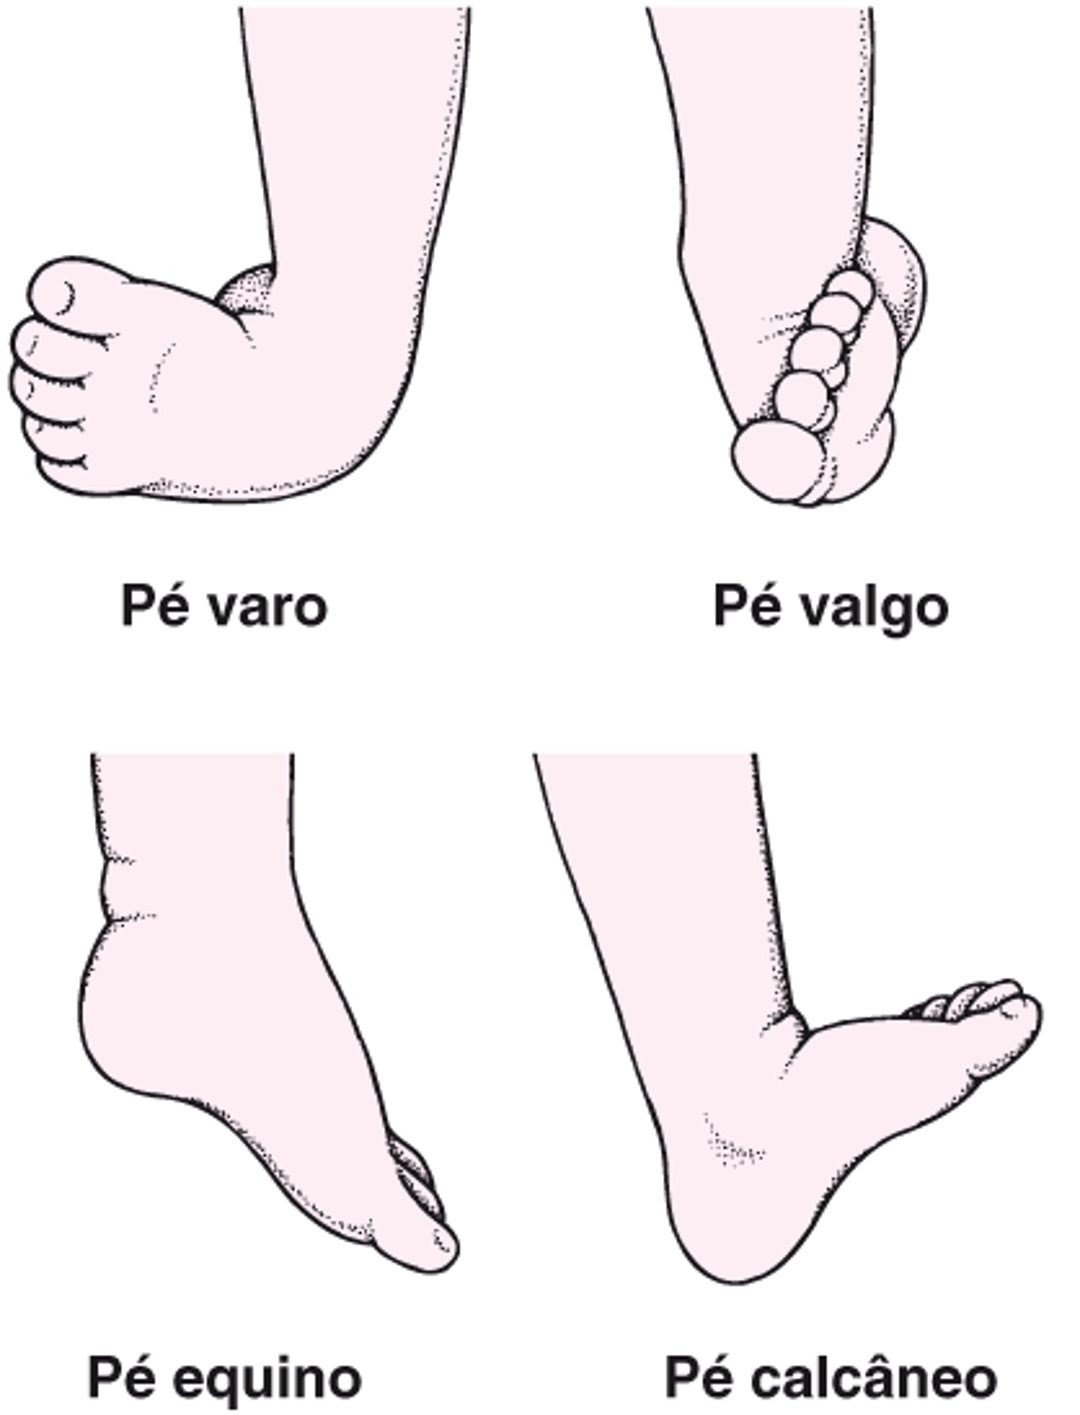 Tipos comuns de pé torto